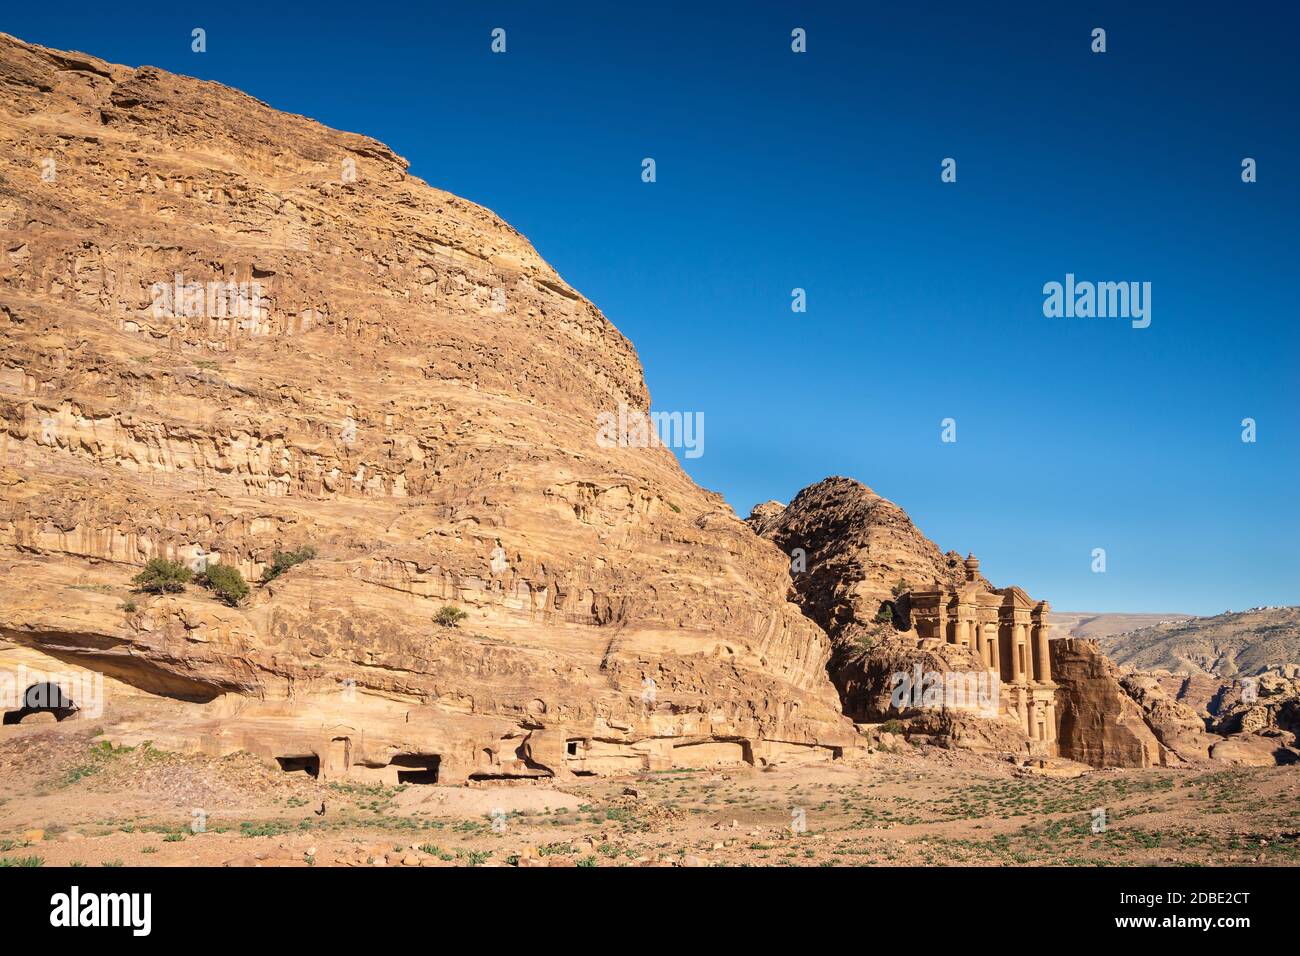 El Deir, Petra, Wadi Musa, Jordan Stock Photo